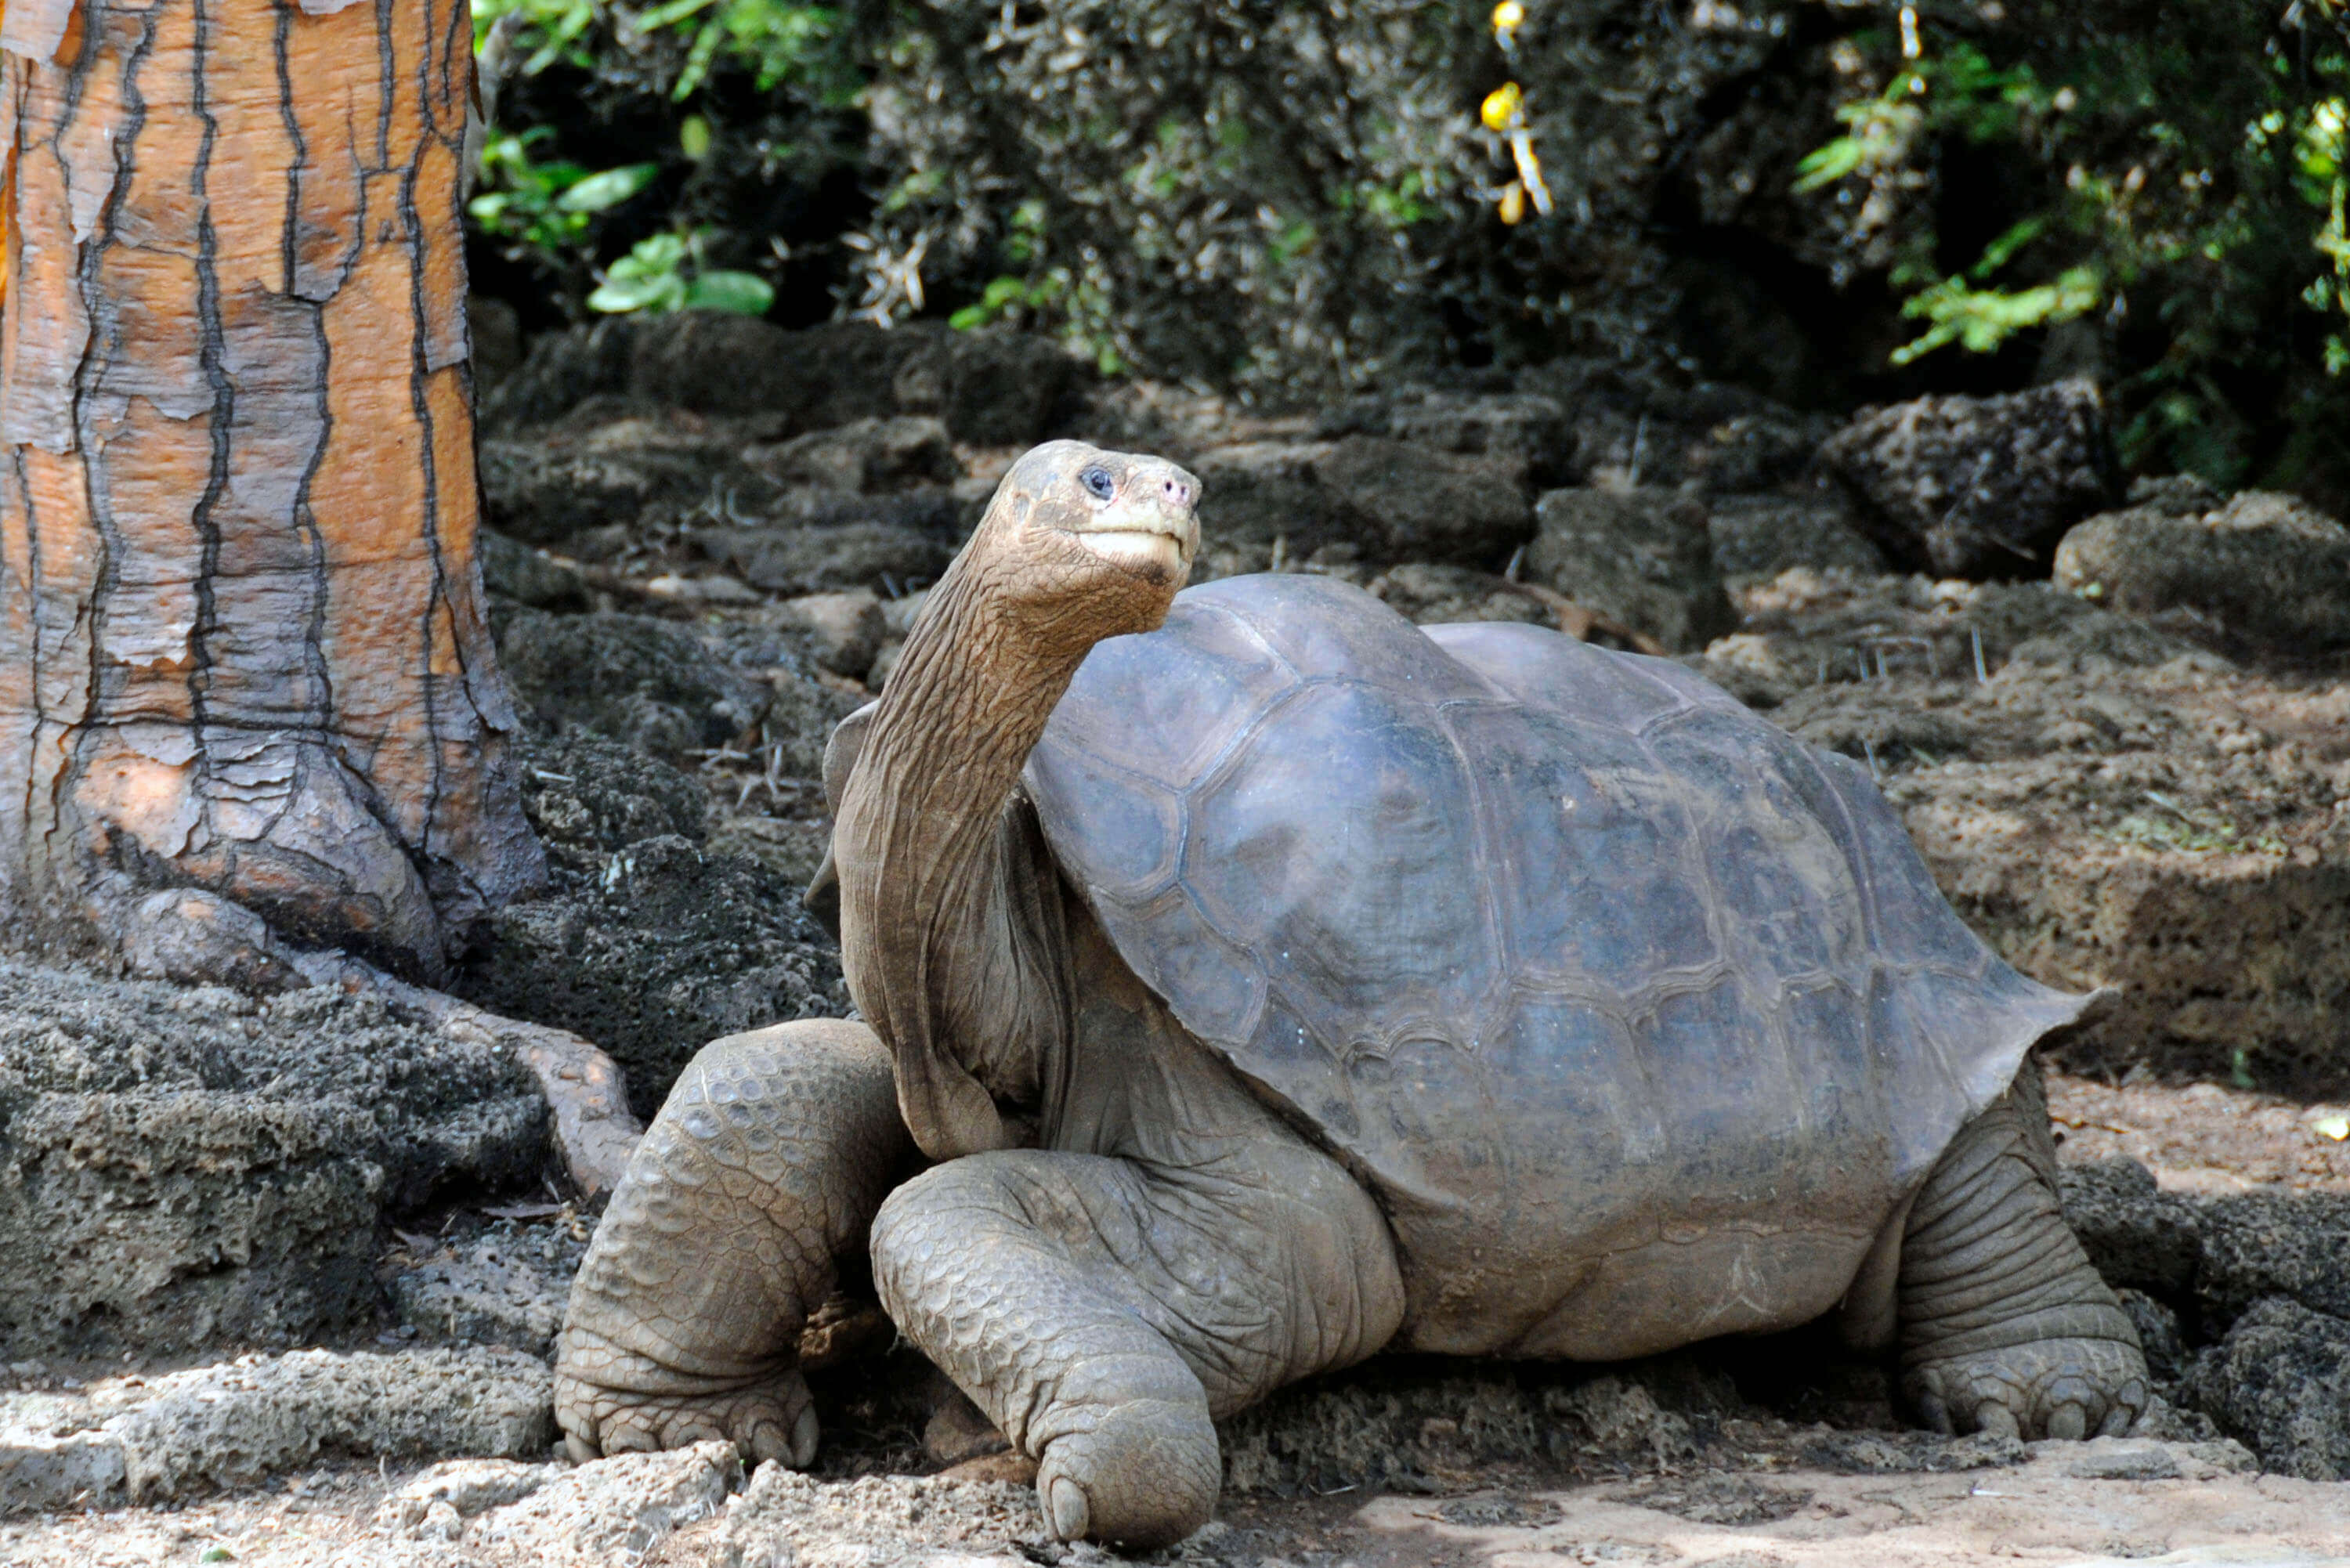 Pauschalreisen auf die Galapagos-Inseln - mit uns entdecken Sie Fauna und Flora